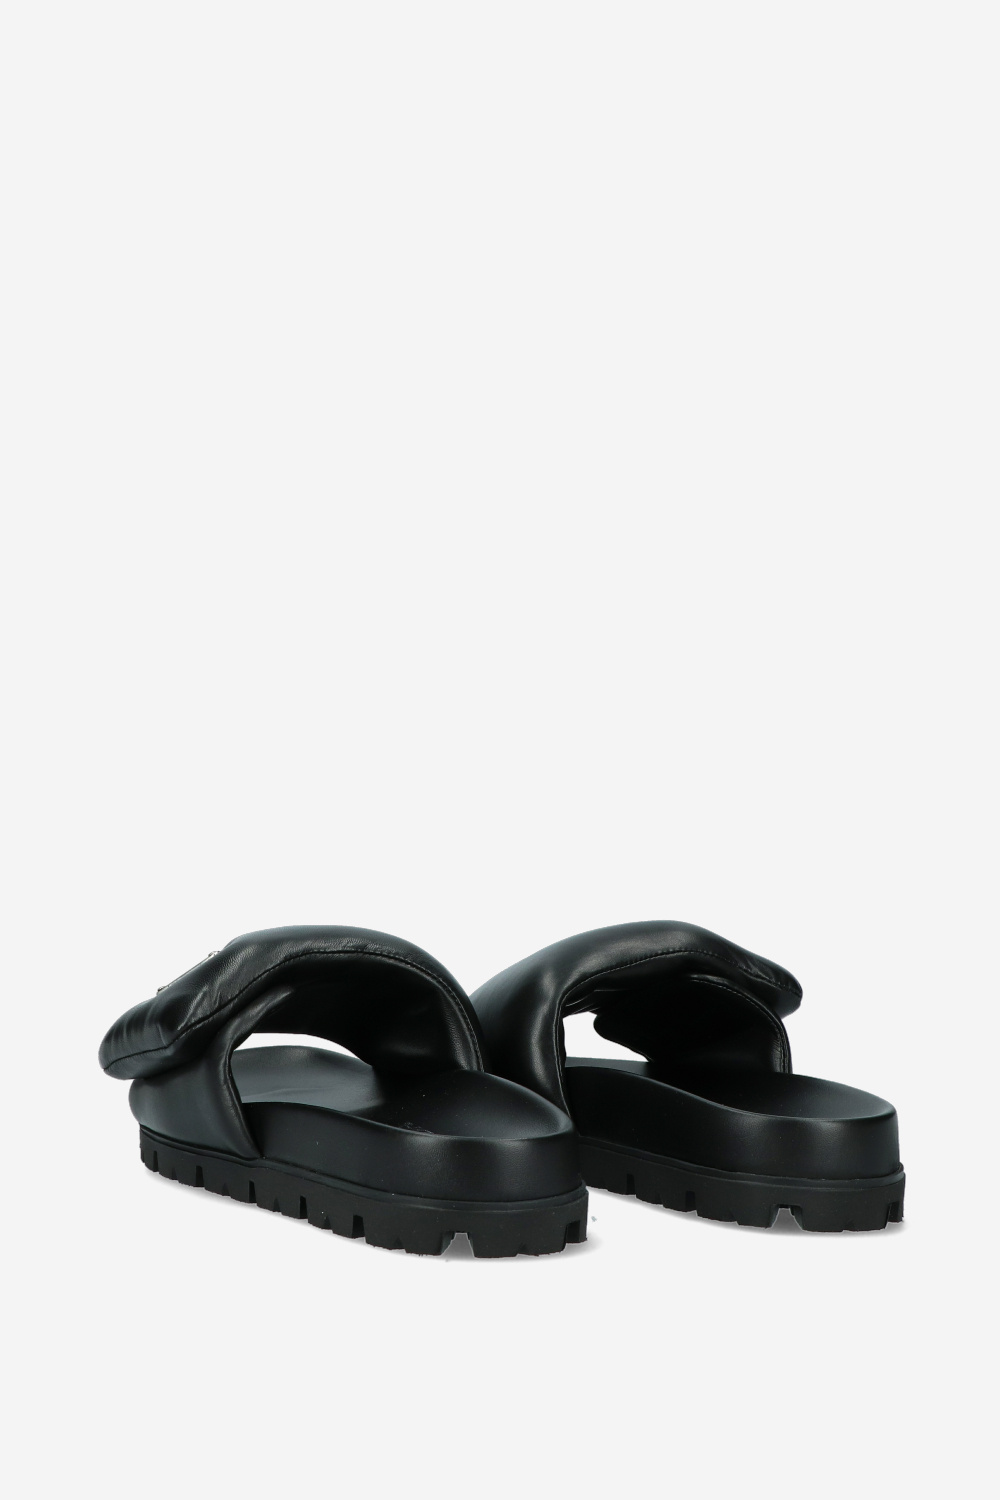 Prada Sandals Black